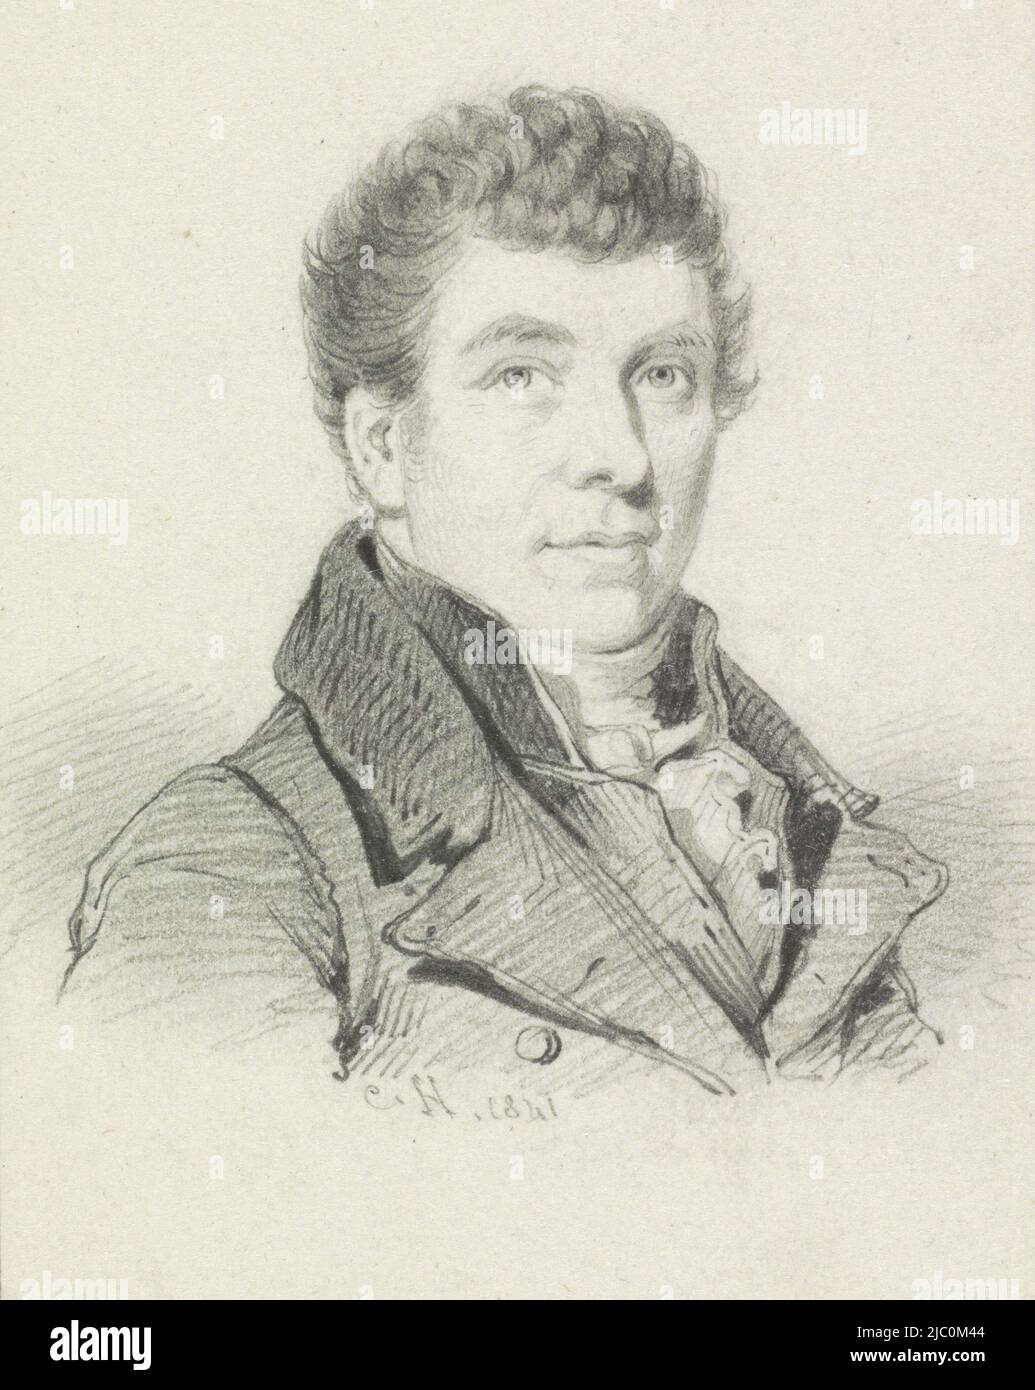 Porträt von Willem Bartel van der Kooi, Zeichner: Johan Coenraad Hamburger, 1841, Papier, H 74 mm × B 58 mm Stockfoto